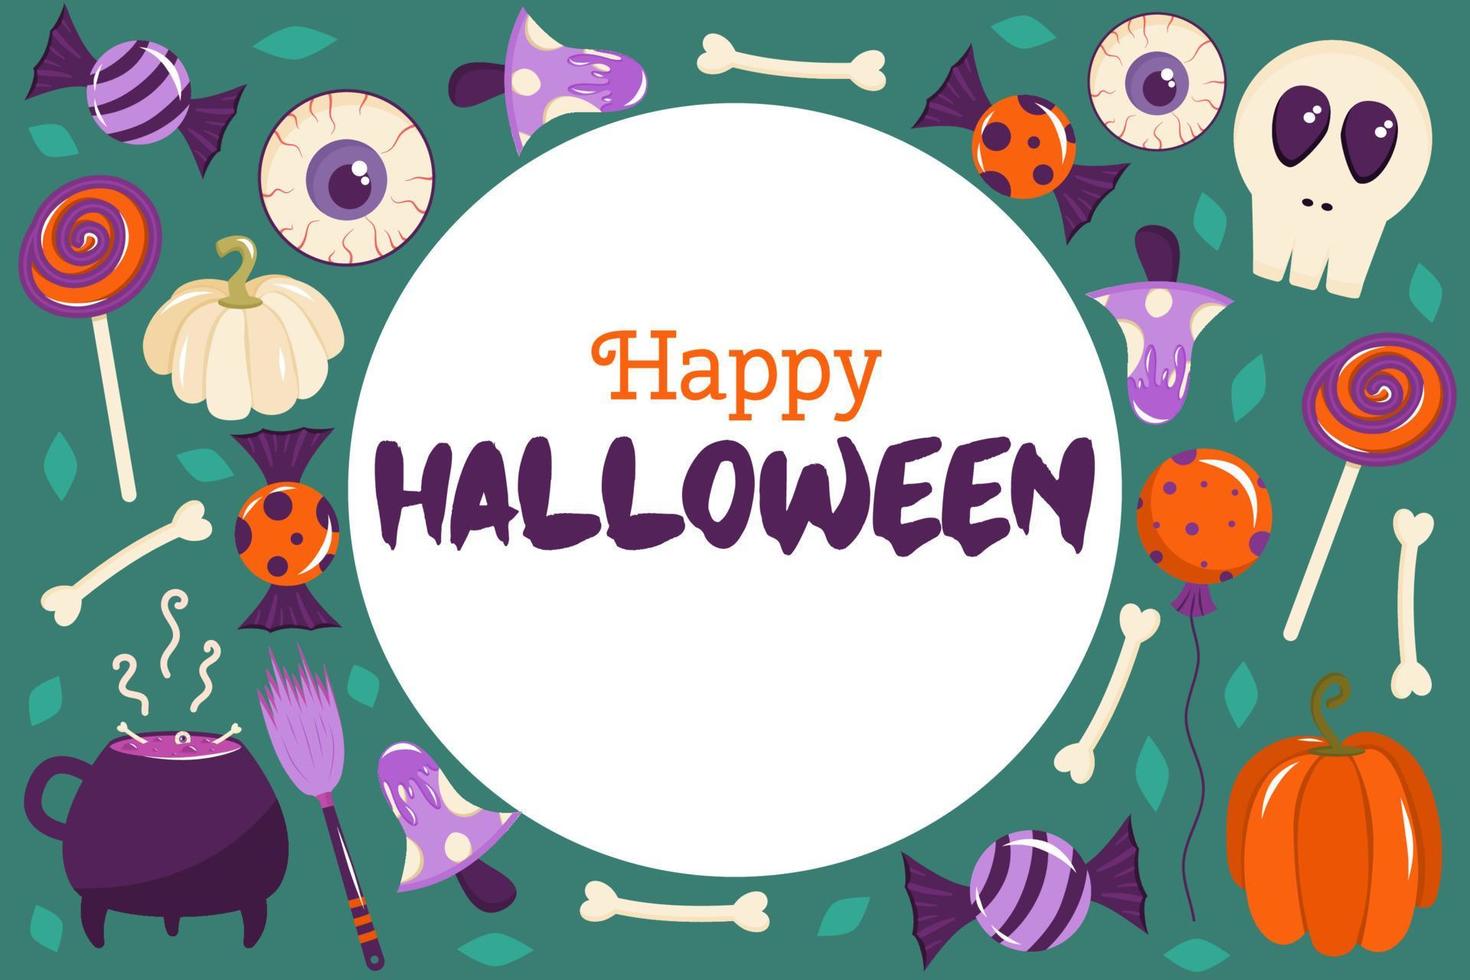 Happy Halloween-Banner in einem Kreis mit Platz für Text. im Hintergrund sind Kürbisse, Knochen, Pilze und Augäpfel verstreut. Vektorillustration für Postkarten oder Layouts vektor